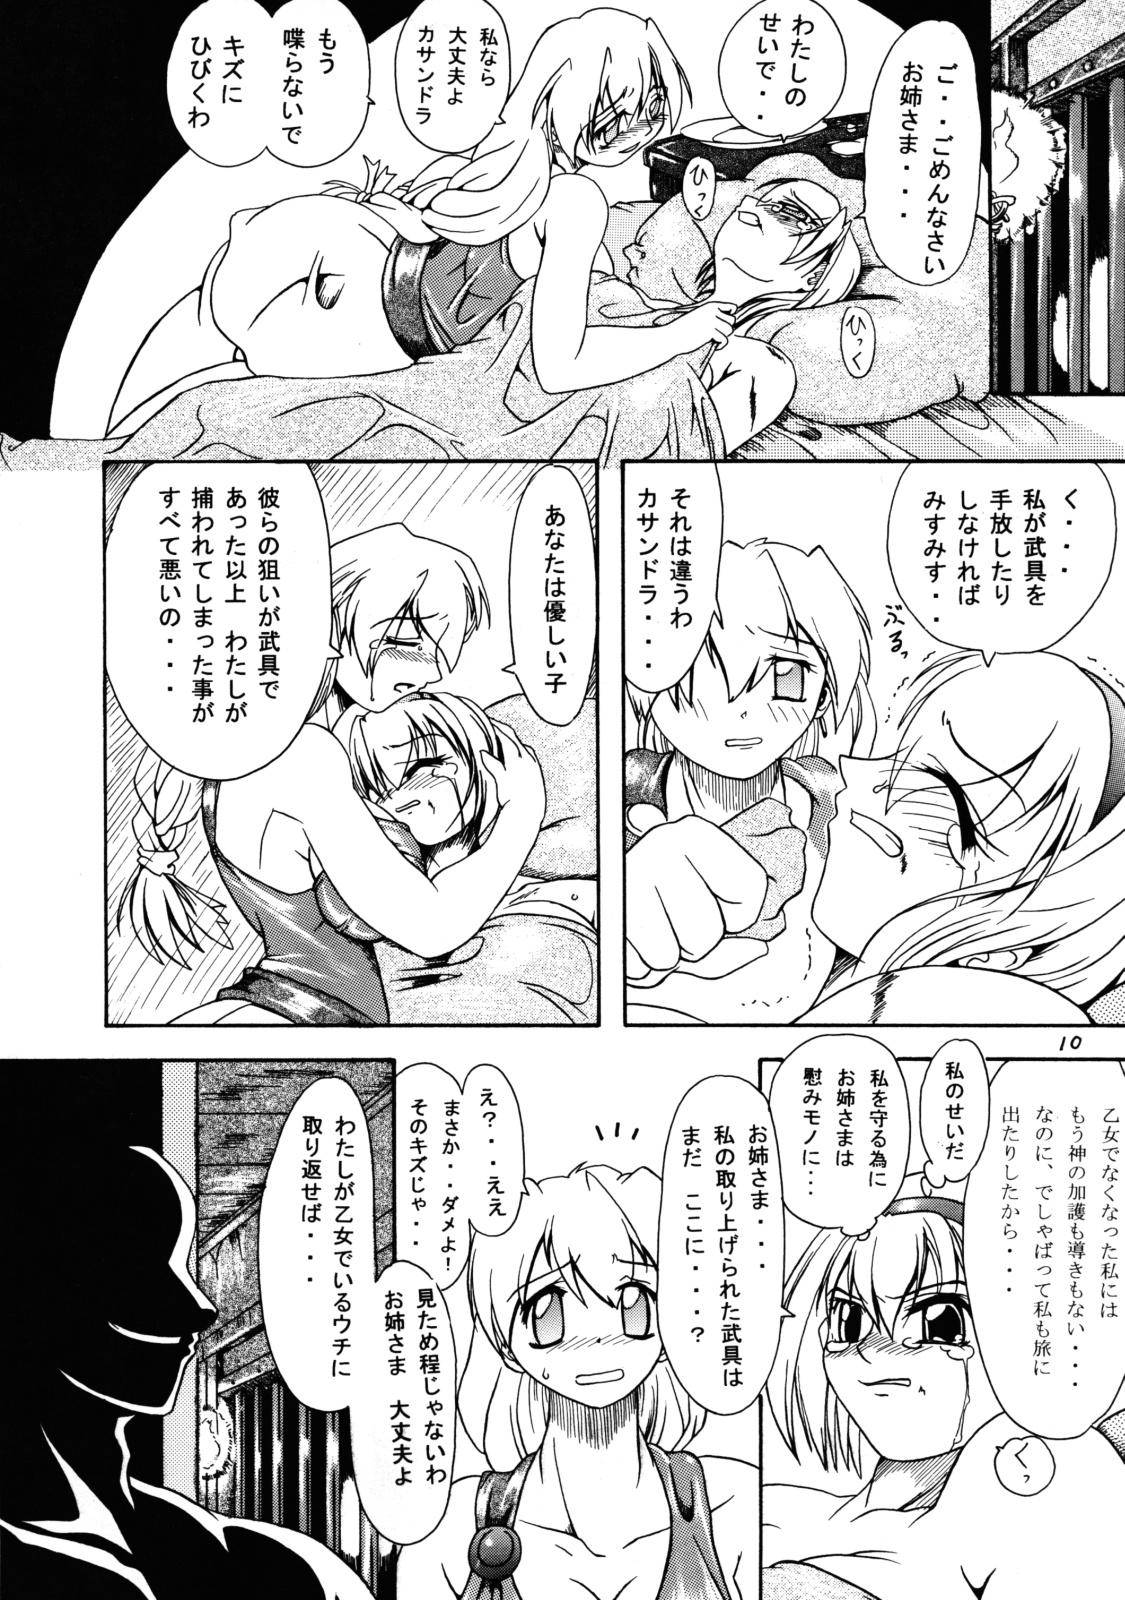 Hole Kakugee Sanmai 3 - Darkstalkers Soulcalibur Submissive - Page 9